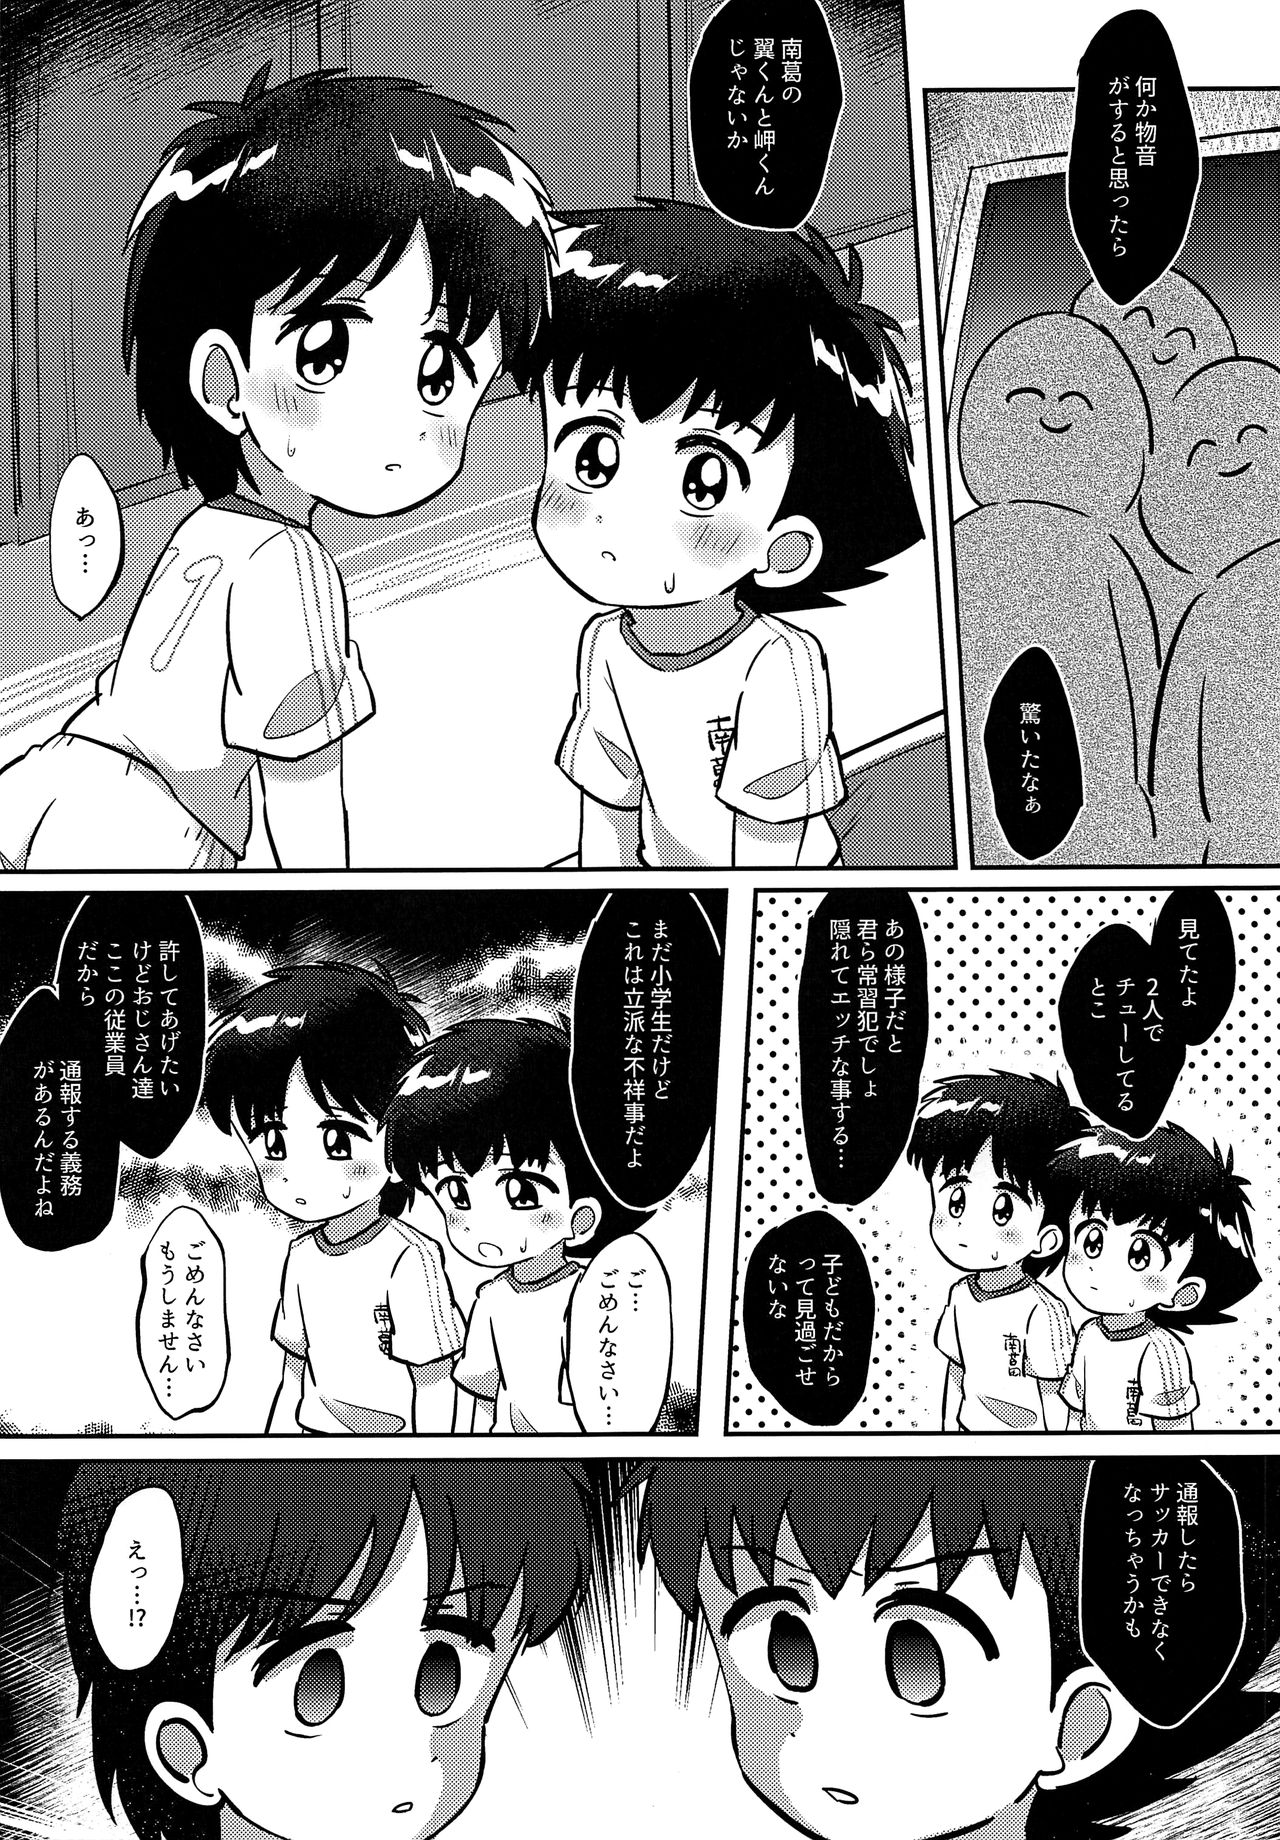 Uwasa no Echi Echi Combi - Page 4 - HentaiEra